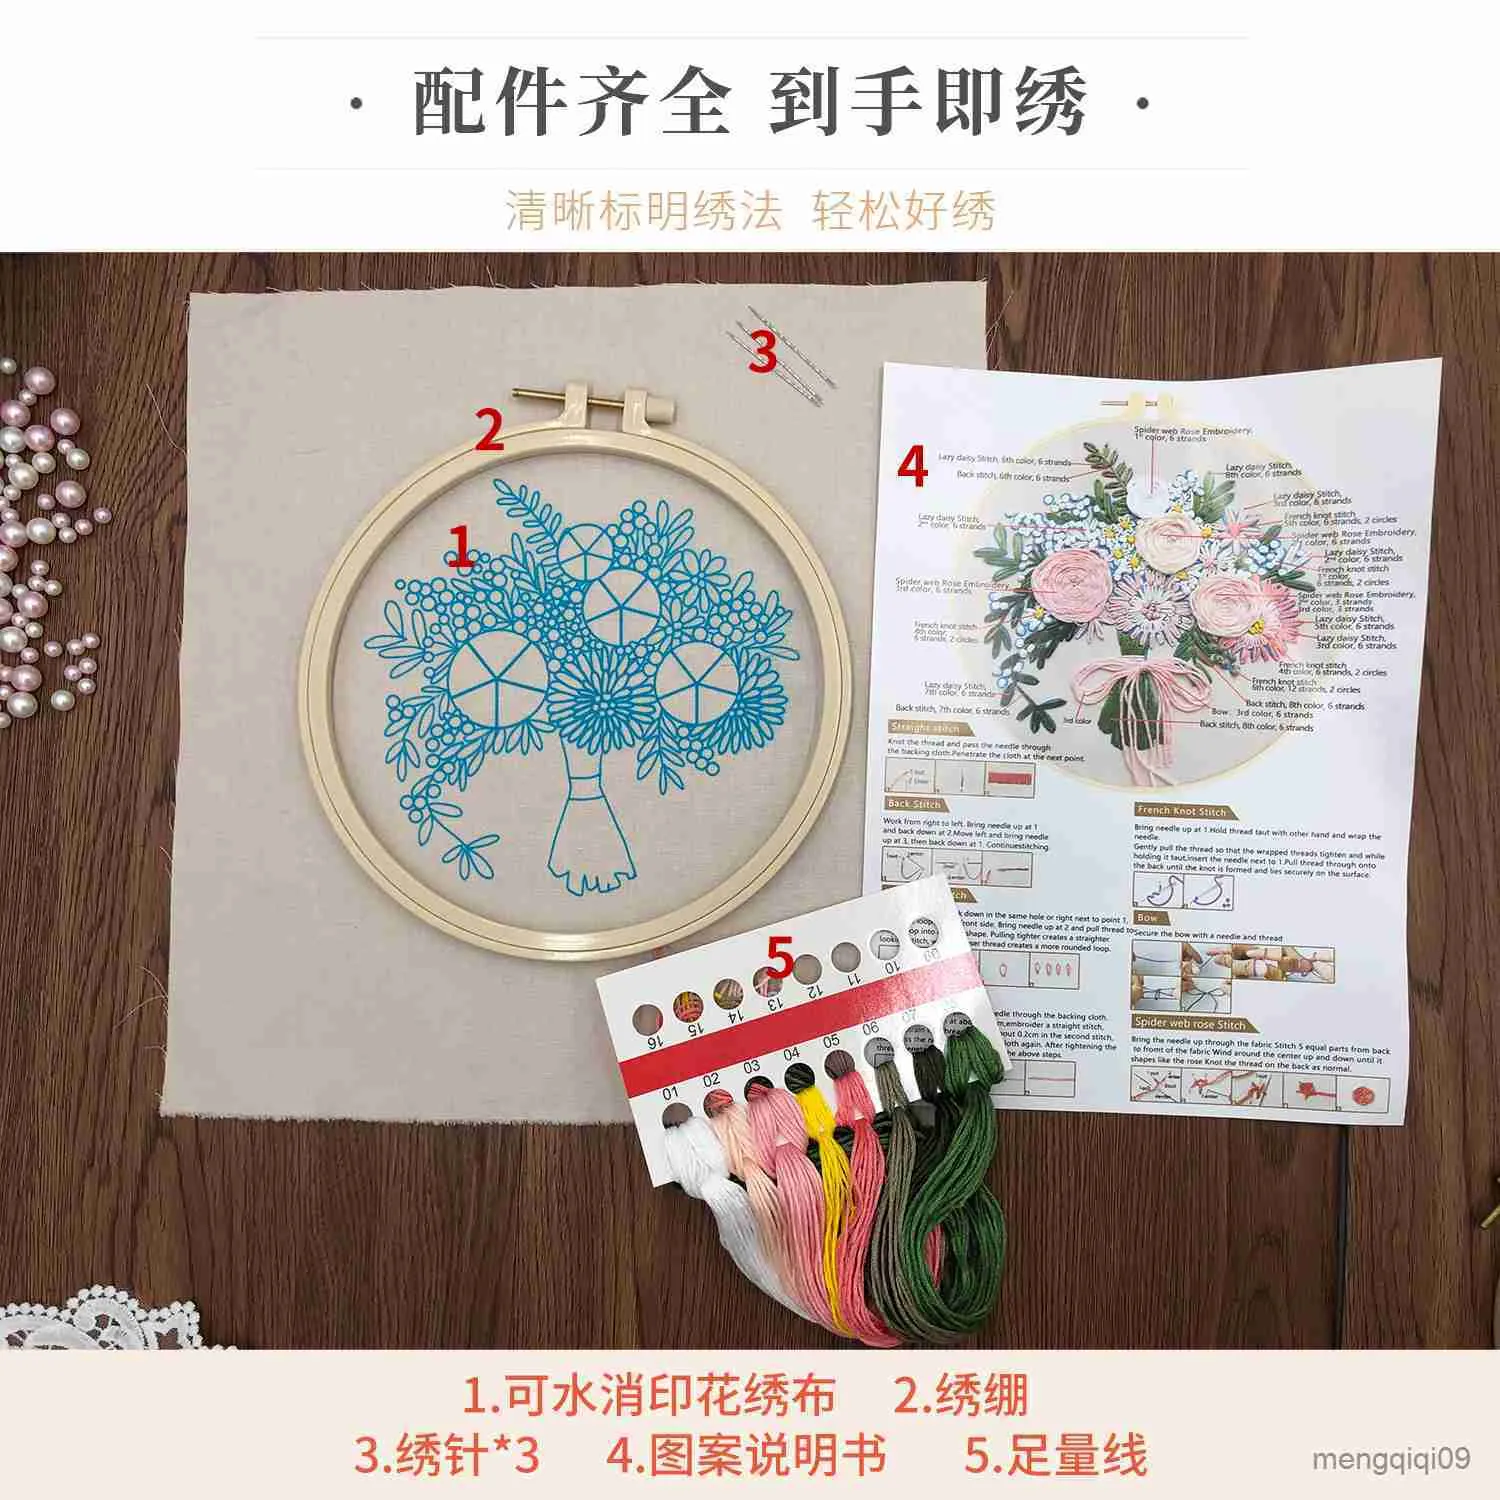 Chinese Producten DIY Creatieve Plant Patroon Borduurwerk Naaien Craft Cross Stitch Materiaal Halffabrikaten Handgemaakte Handwerken voor Home Decor R230807